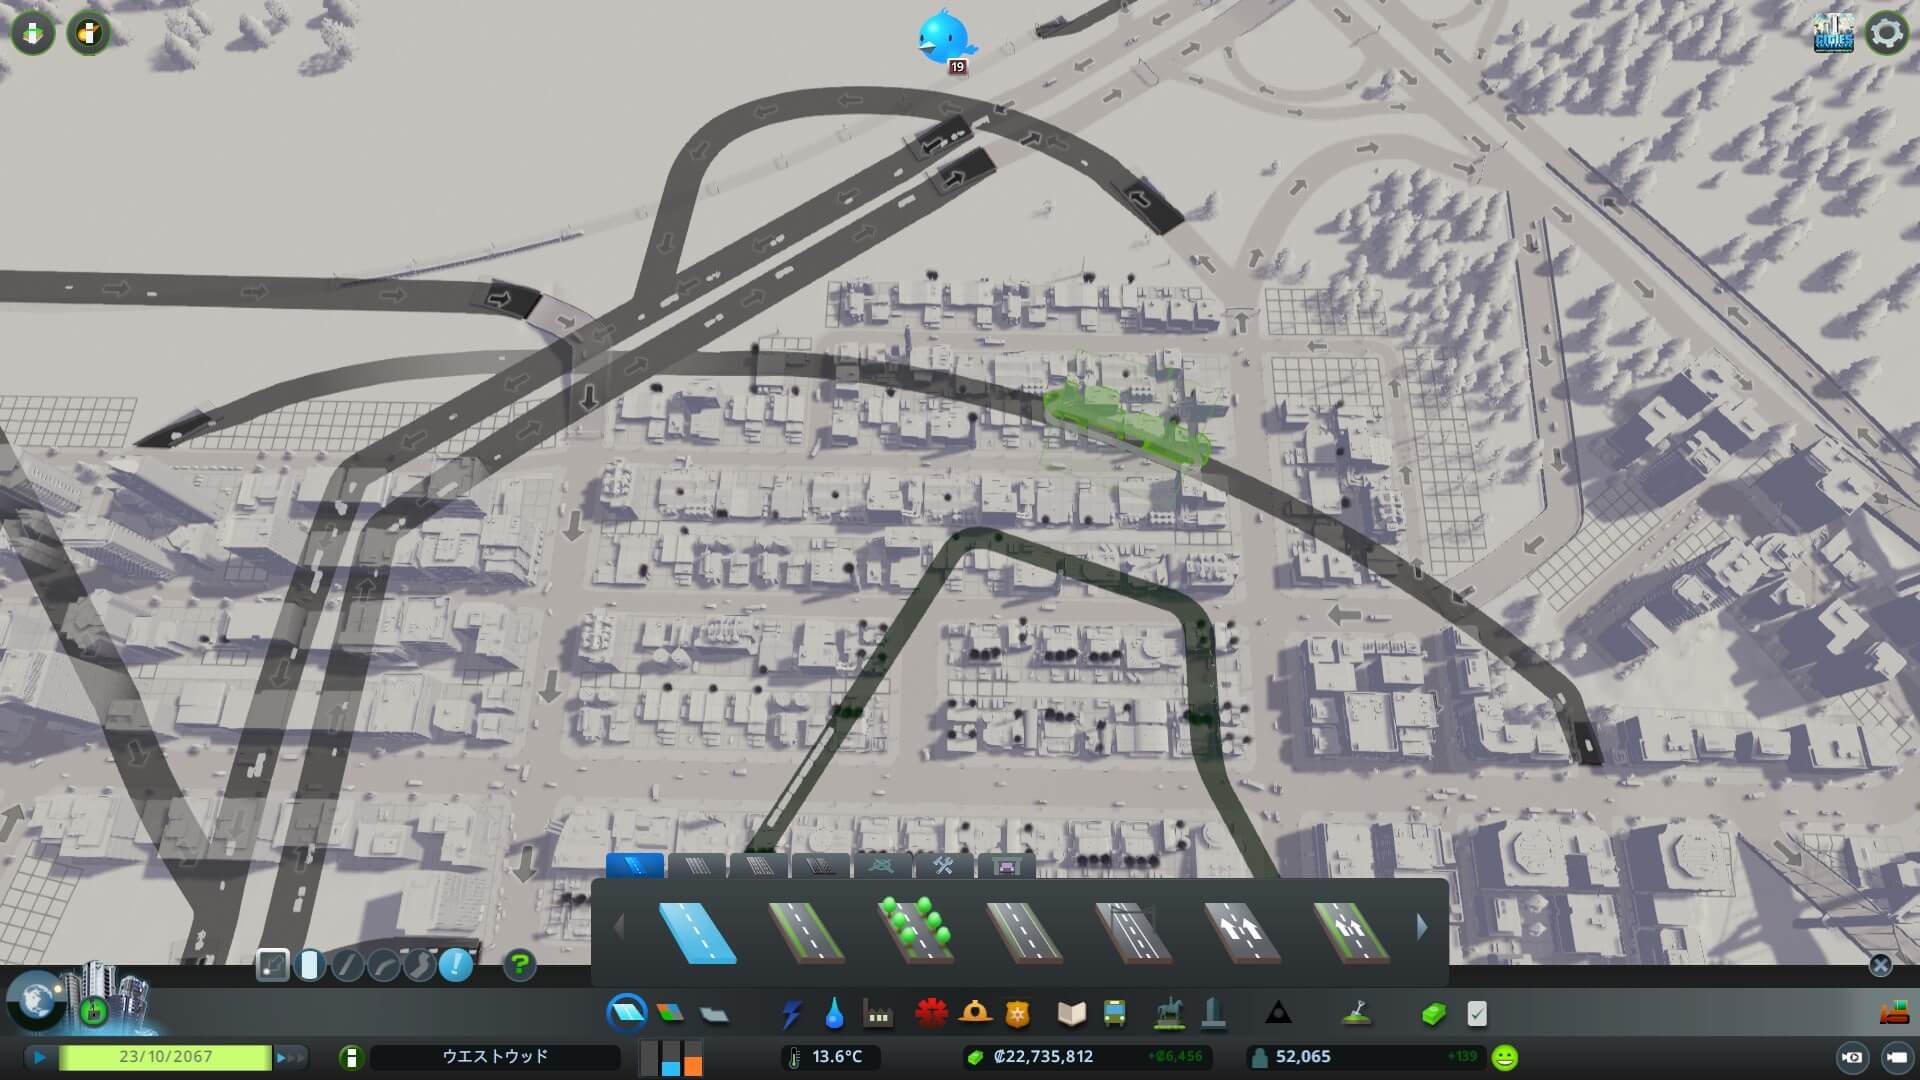 シティーズスカイライン 攻略ブログ 高速道路を地下に埋設して渋滞解消 Game Play360